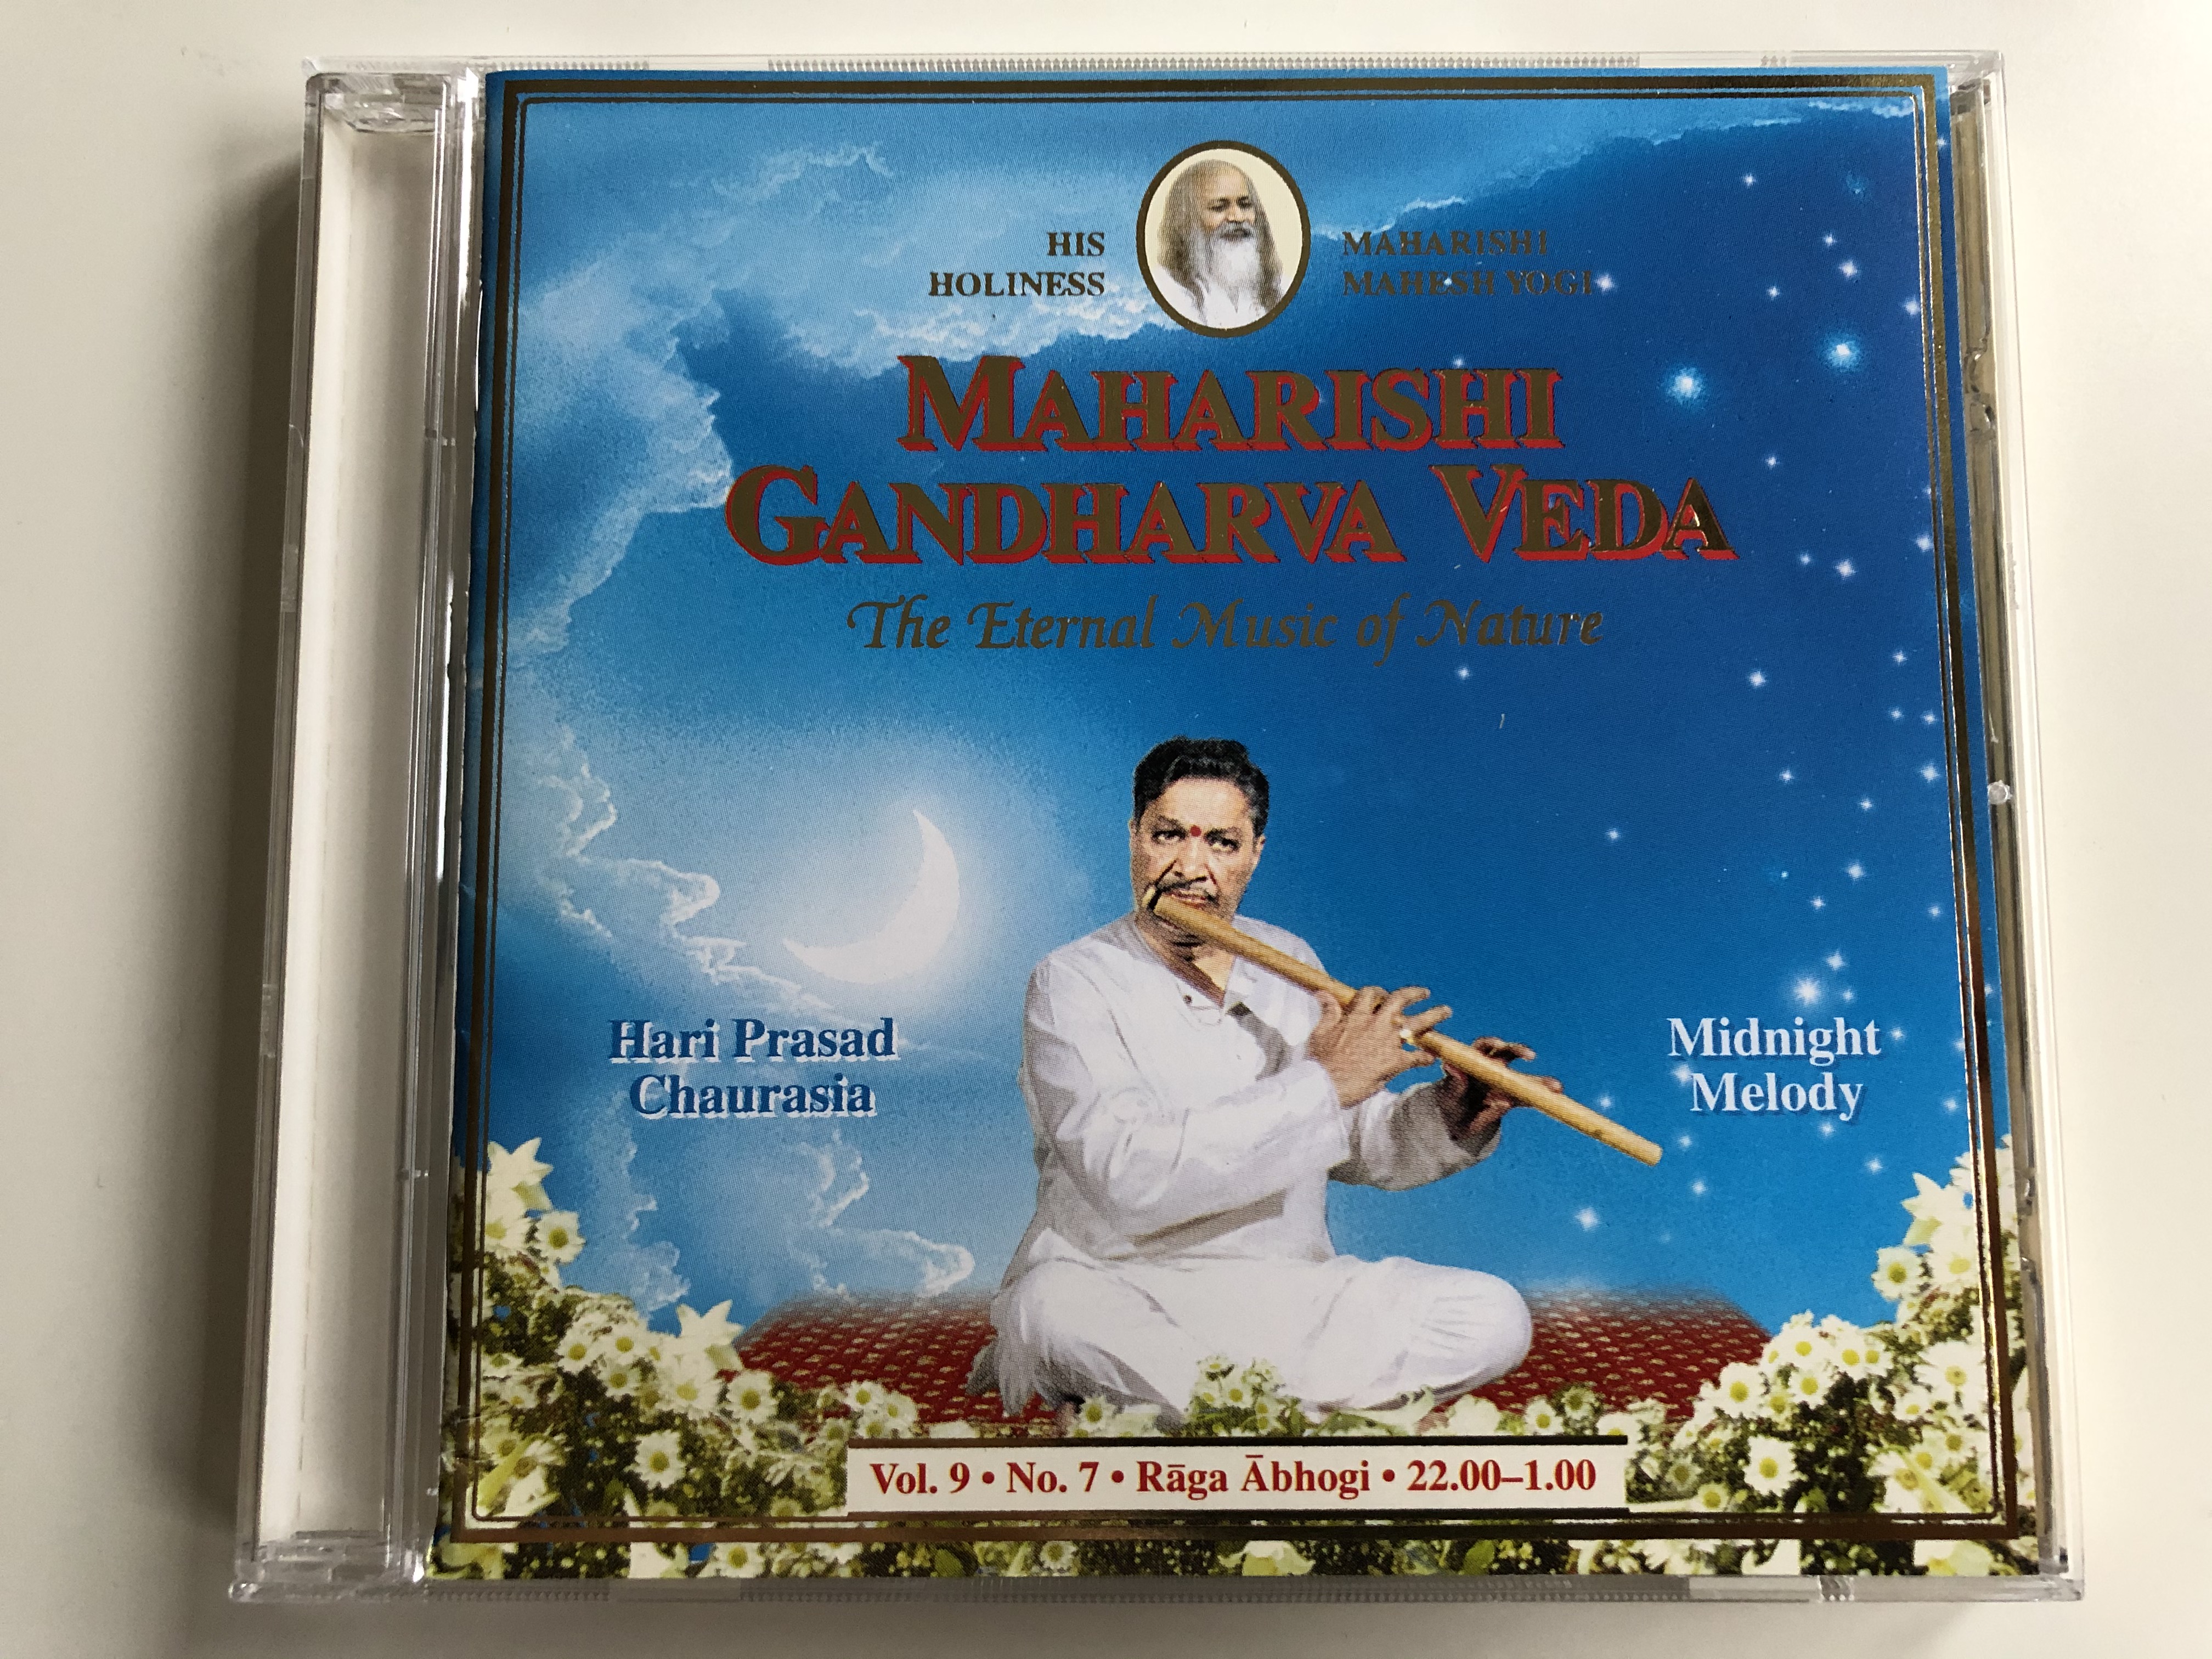 maharishi-gandharva-veda-the-eternal-music-of-nature-hari-prasad-chaurasia-midnight-melody-maharishi-world-centre-of-gandharva-veda-audio-cd-1995-mvu-9-7-1-.jpg